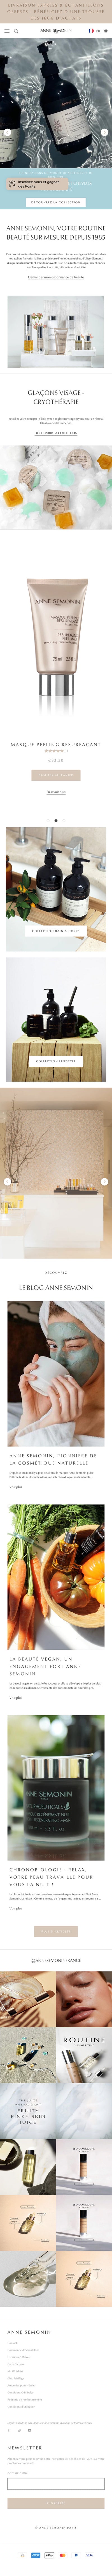 Anne Semonin - Homepage - Mobile